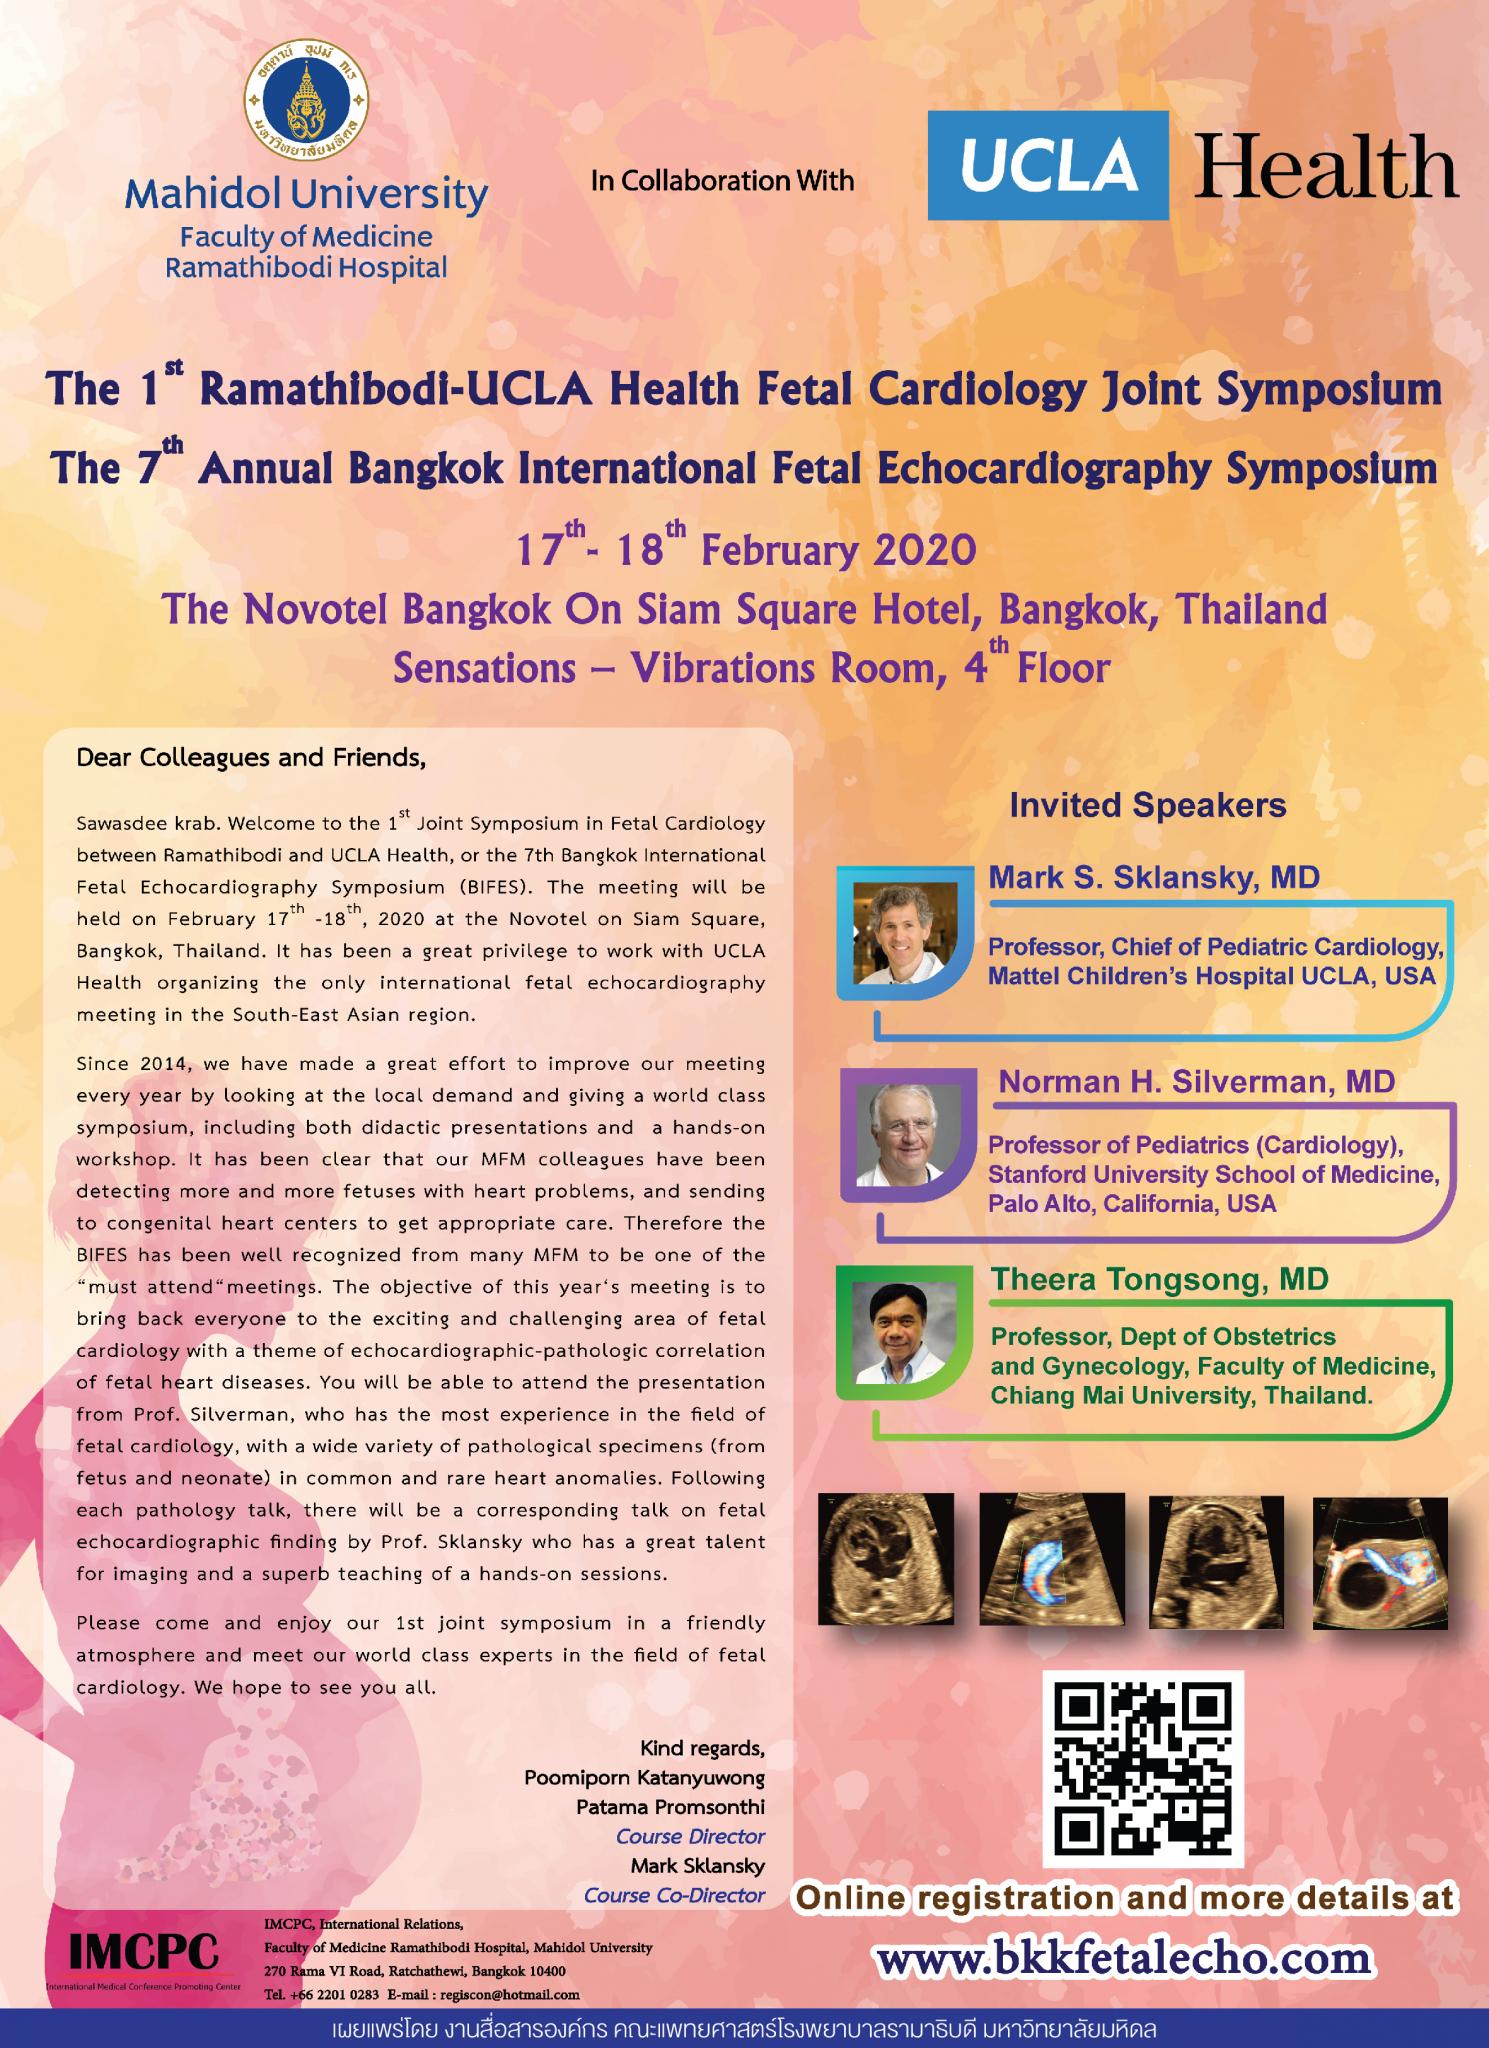 ขอเชิญเข้าร่วมการประชุมวิชาการทางการแพทย์ระดับนานาชาติ เรื่อง The 1st Ramathibodi - UCLA Fetal Cardiology Joint Symposium, The 7th Bangkok International Fetal Echocardiography Symposium